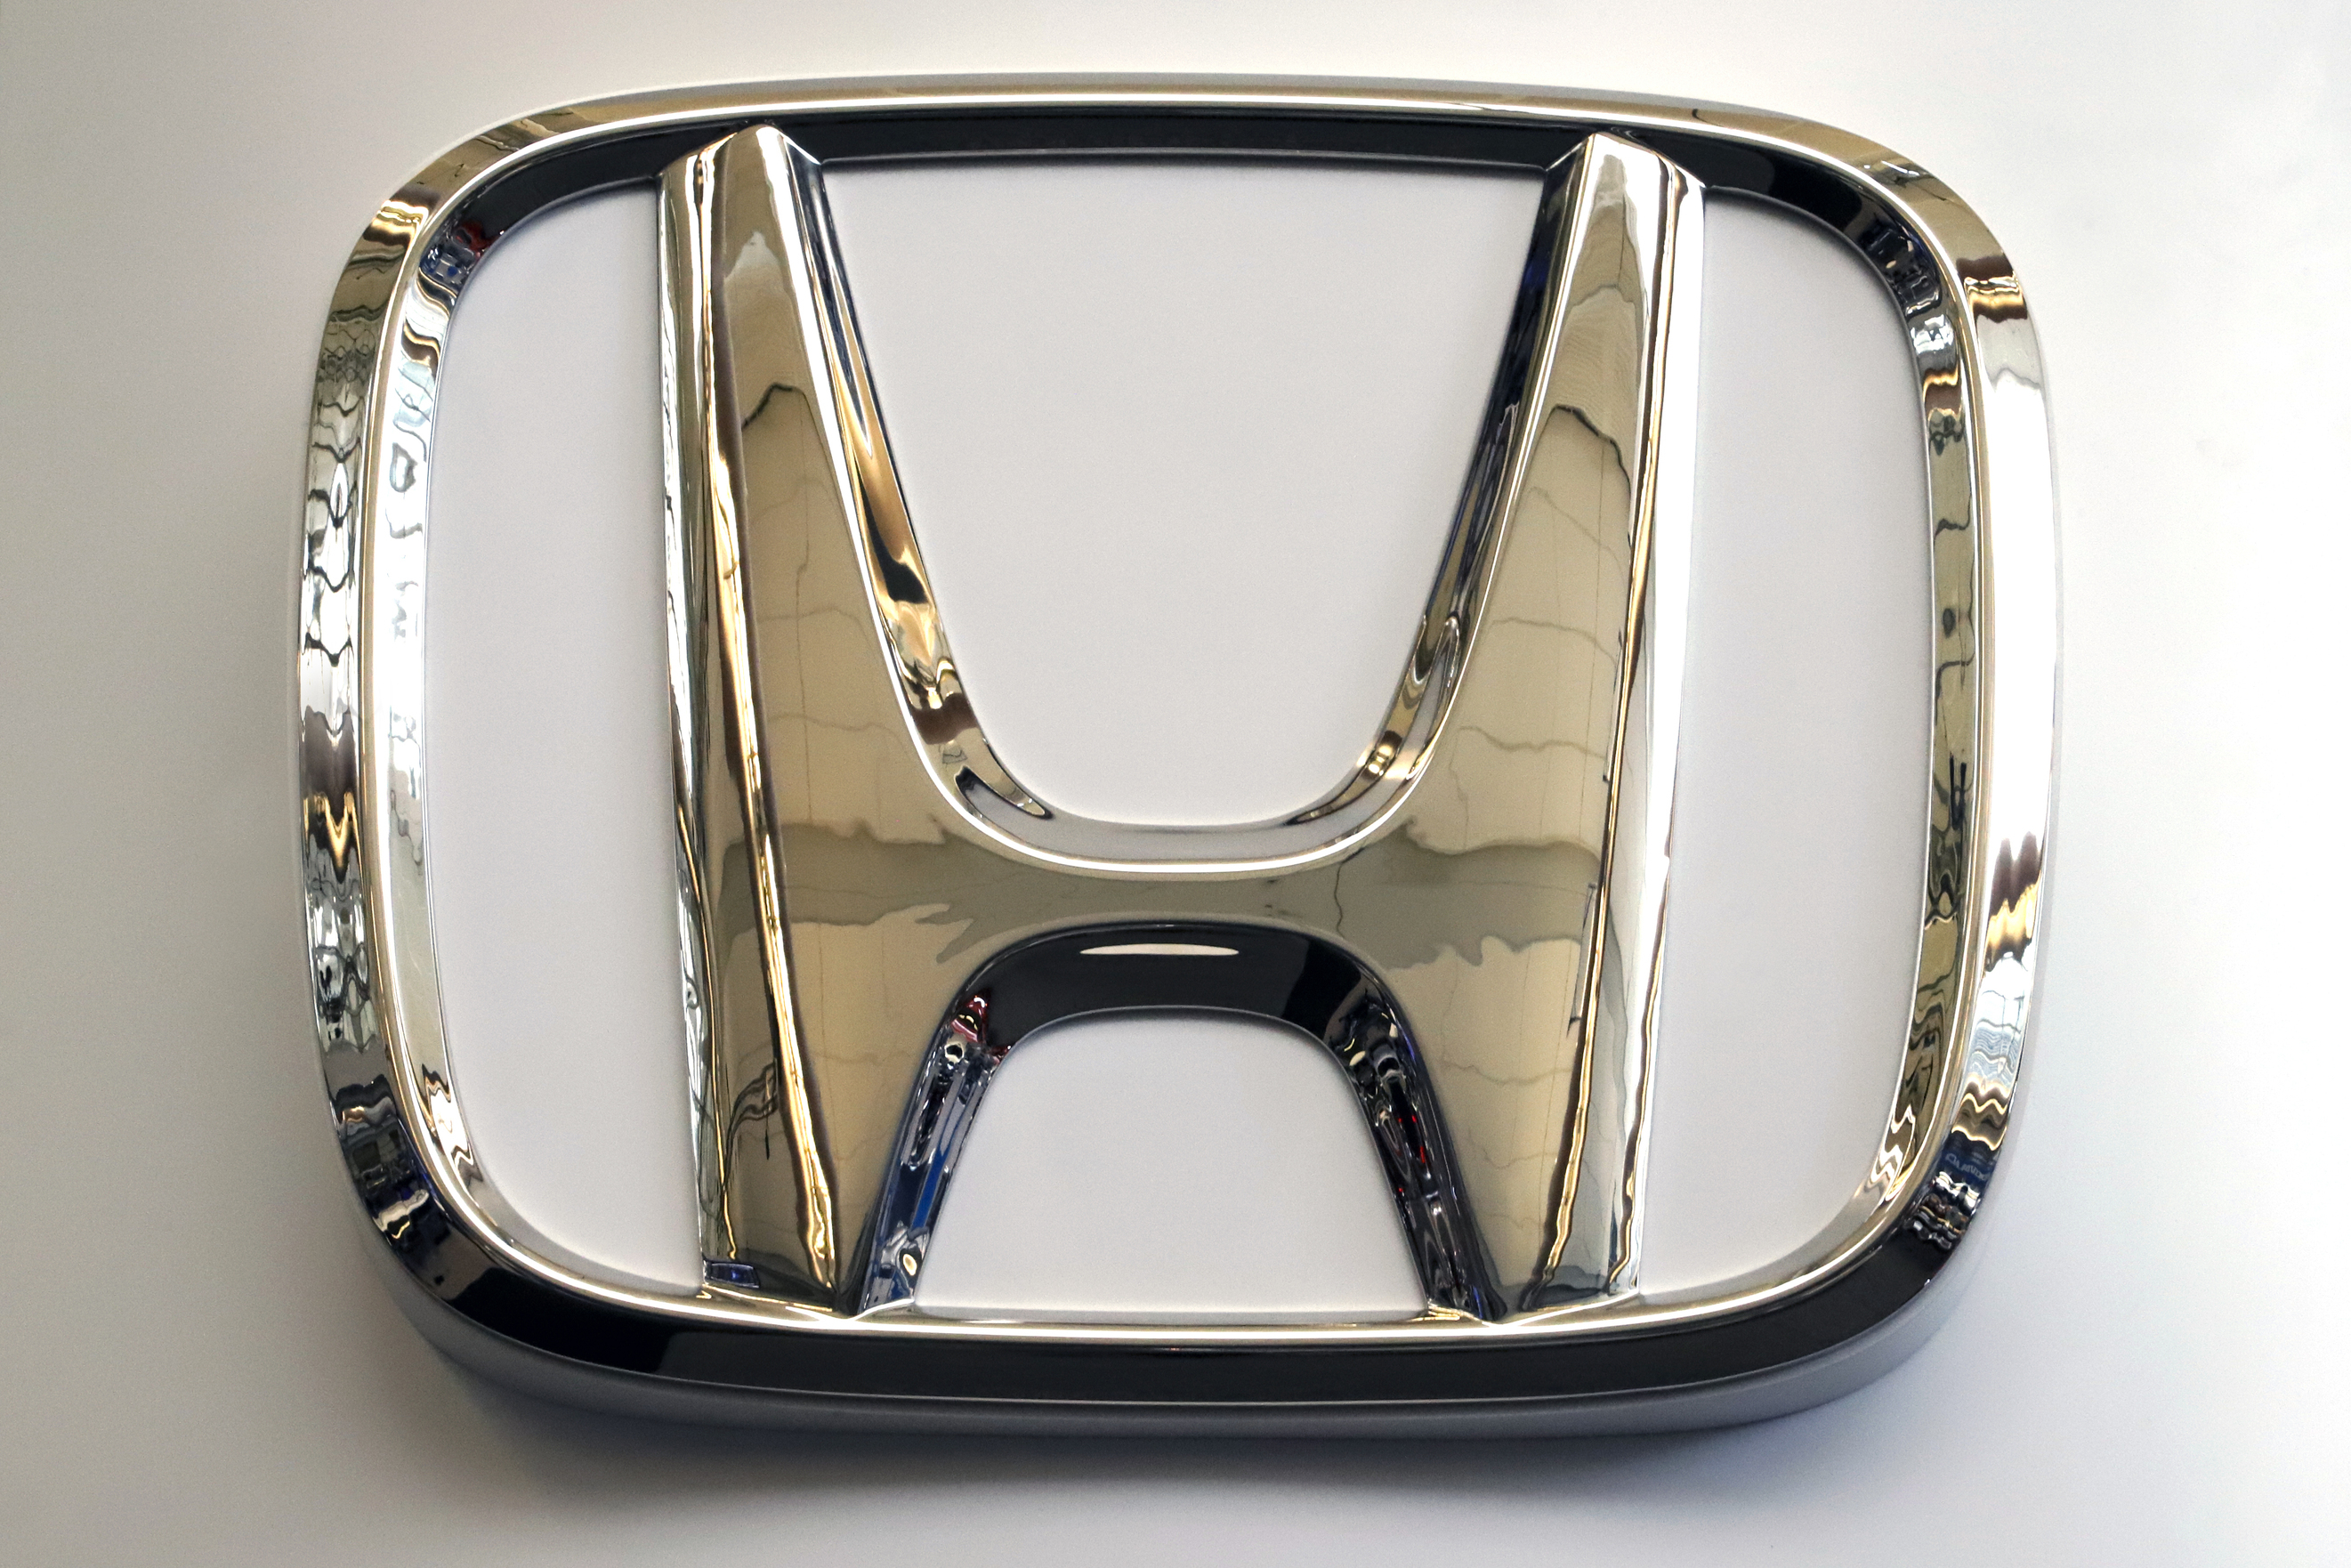 Honda recalls 1.2M more vehicles with dangerous air bags in US